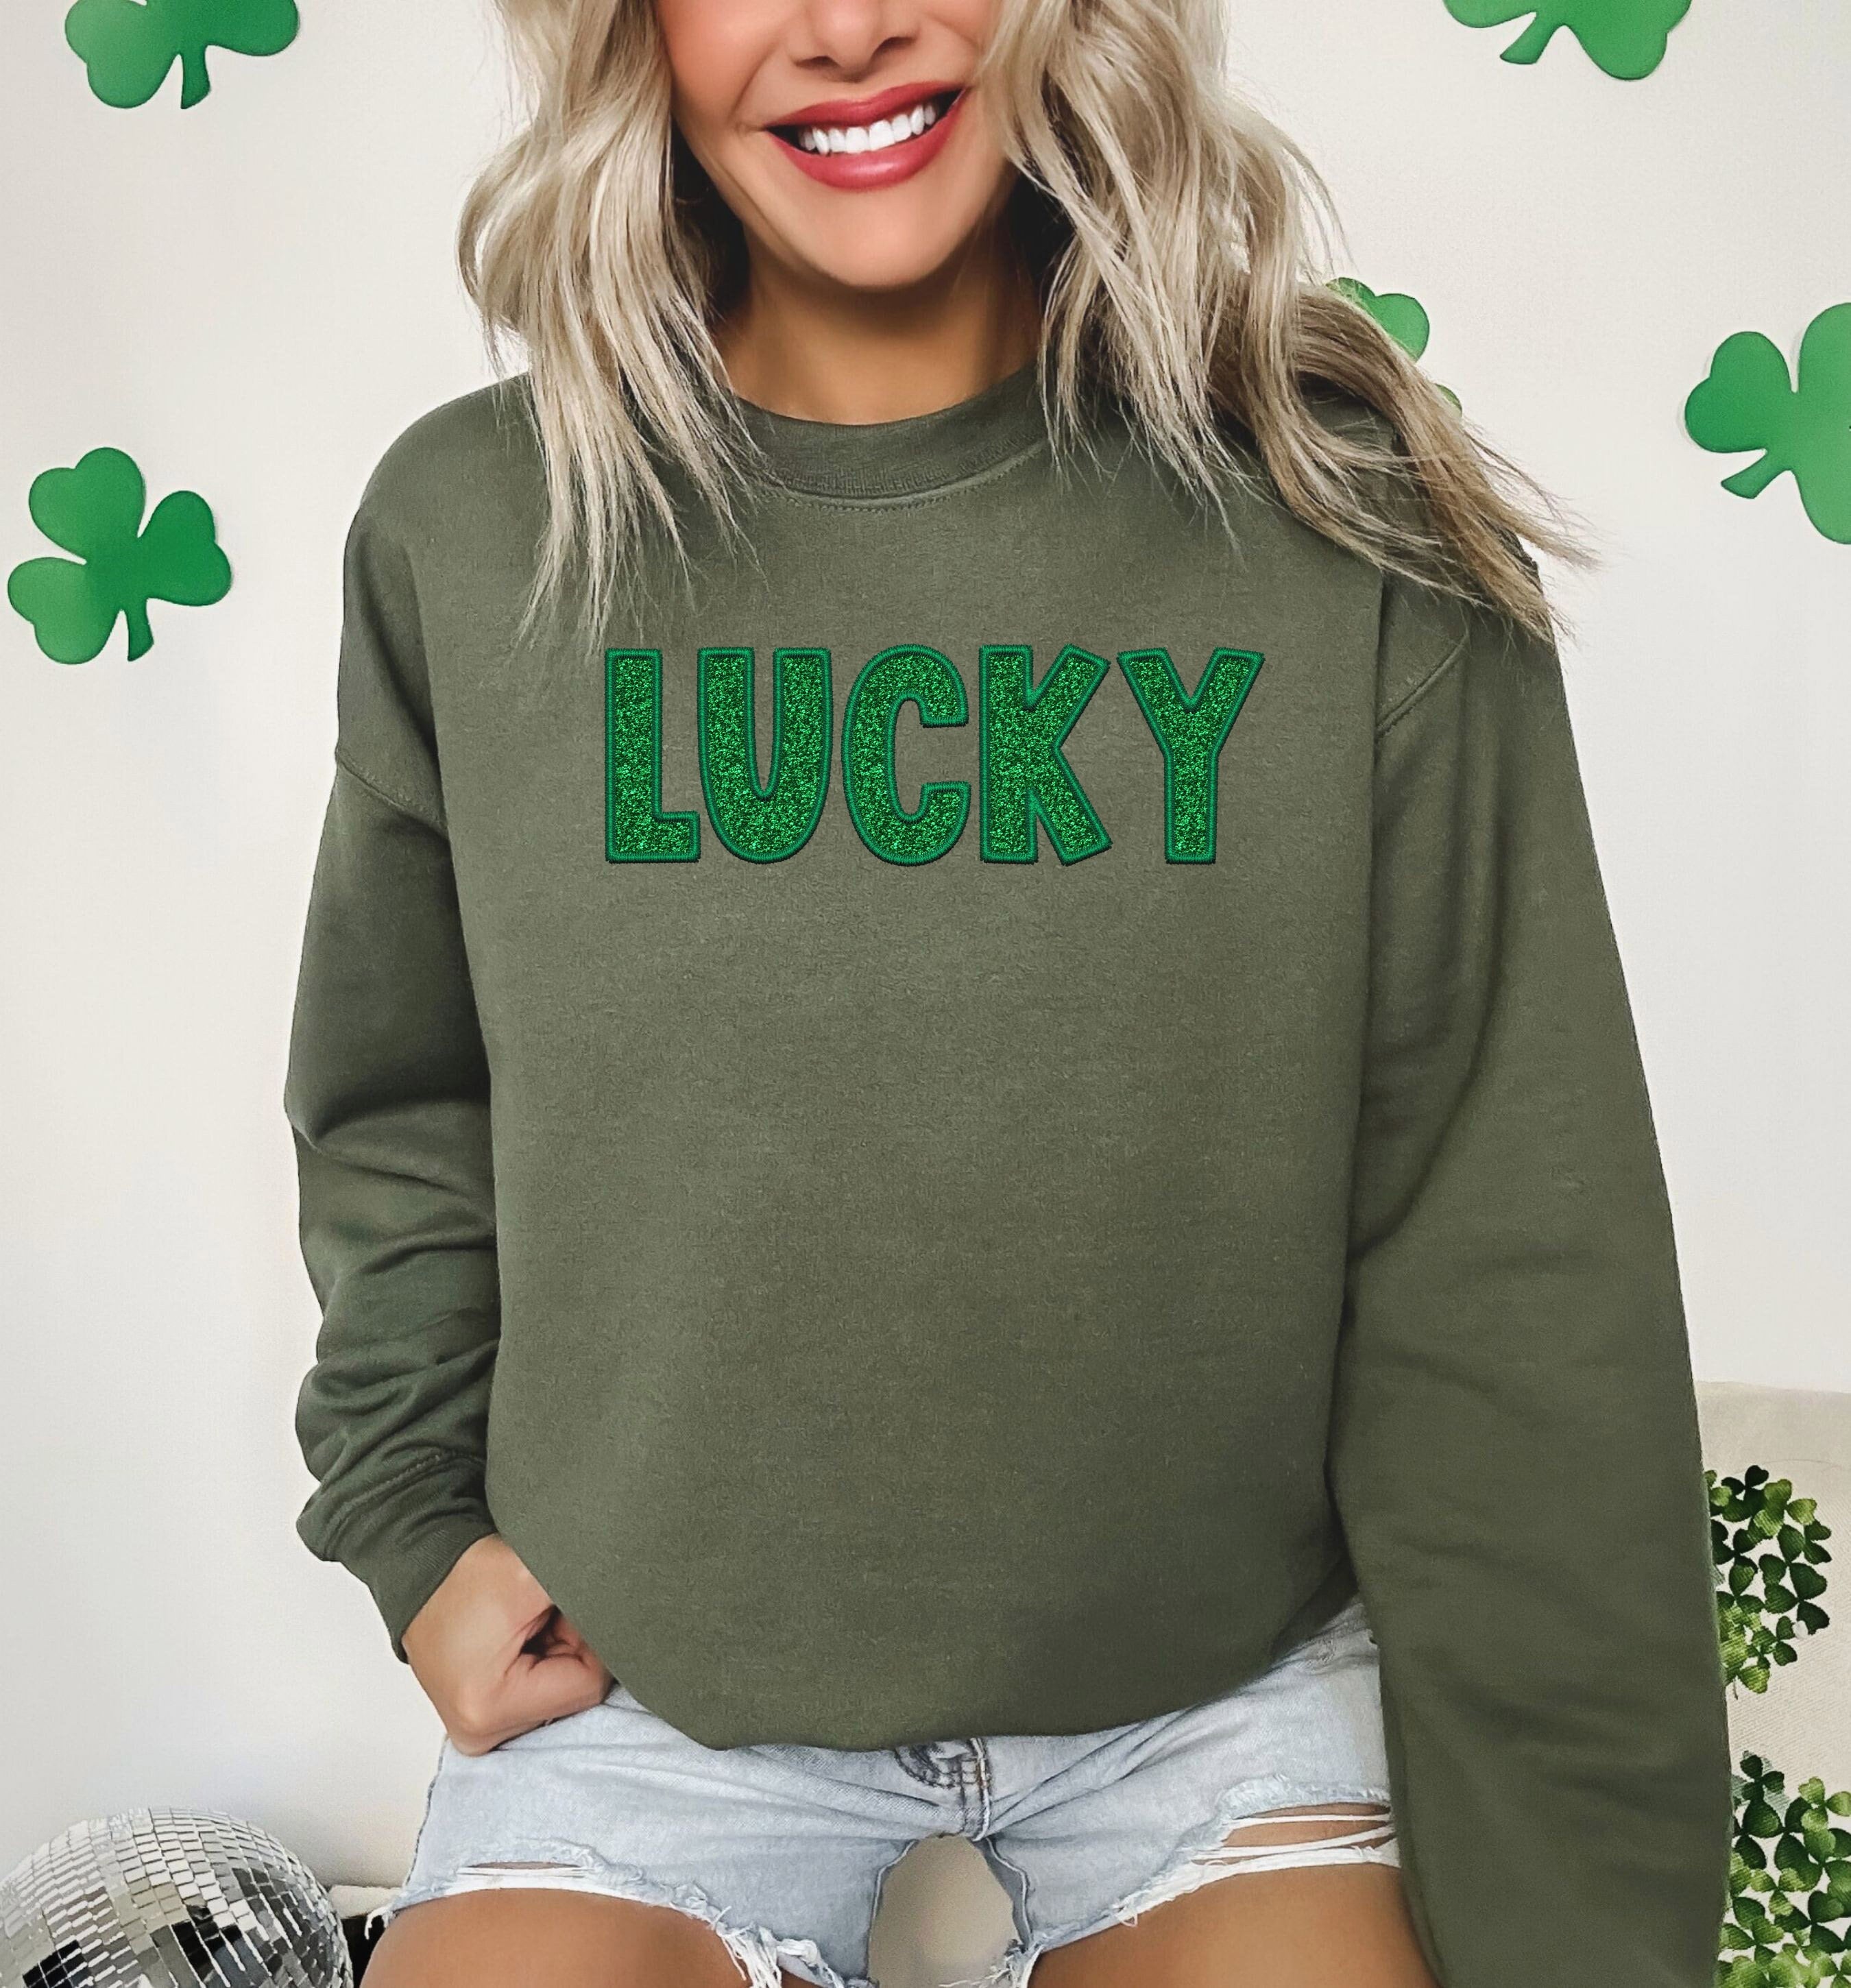 Cute Lucky Sweatshirt